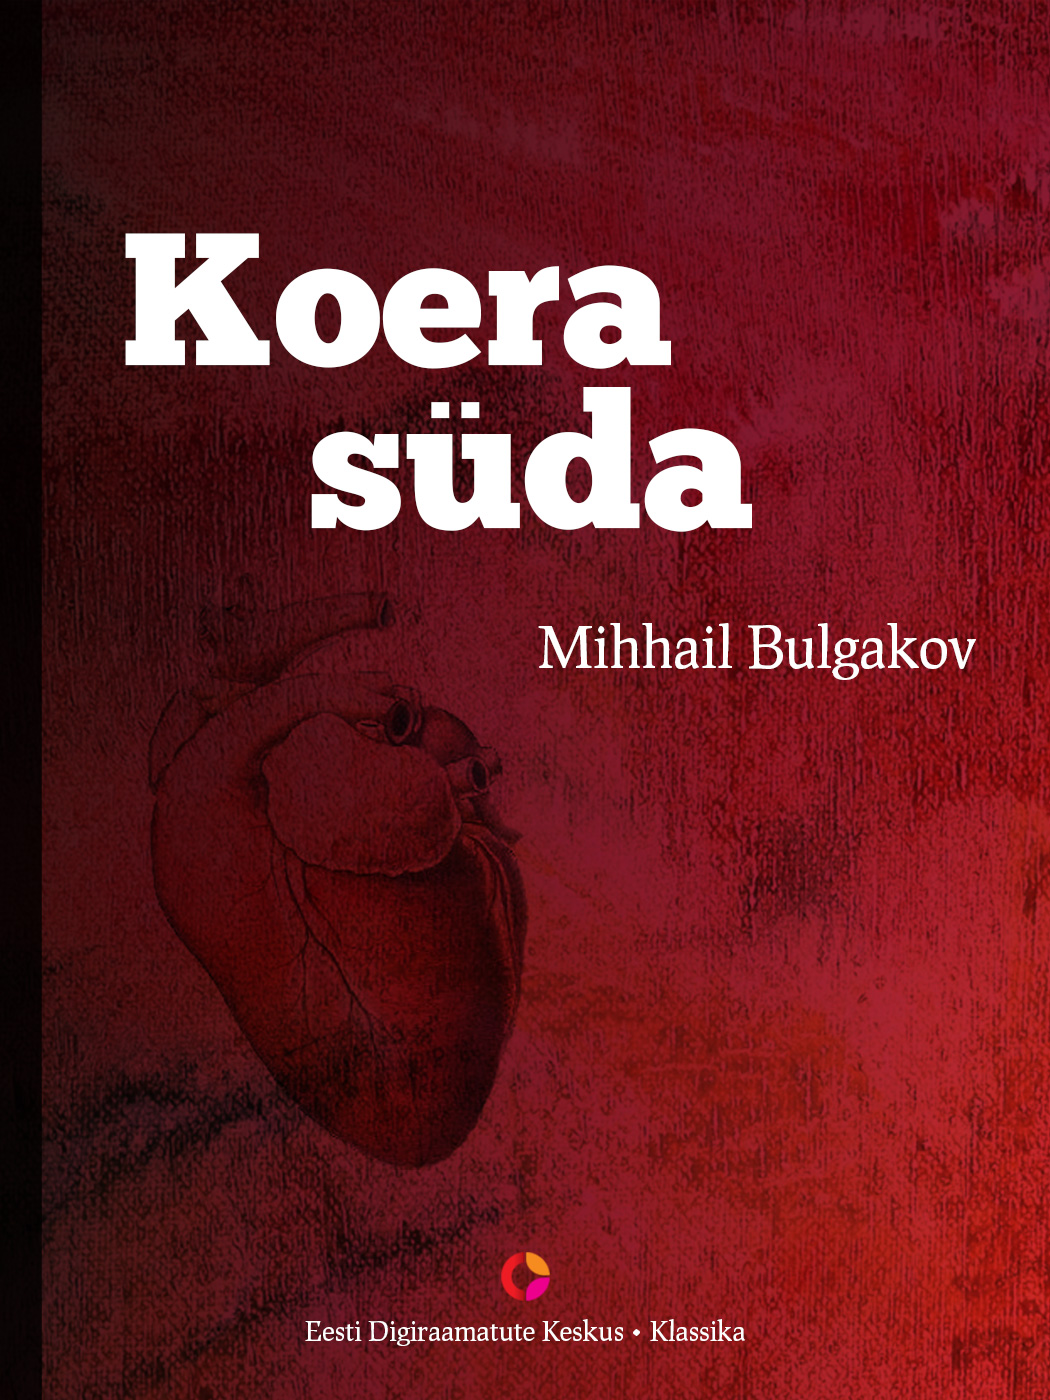 Книга Koera süda из серии , созданная Mihhail Bulgakov, может относится к жанру Русская классика, Советская литература. Стоимость электронной книги Koera süda с идентификатором 21195140 составляет 344.63 руб.